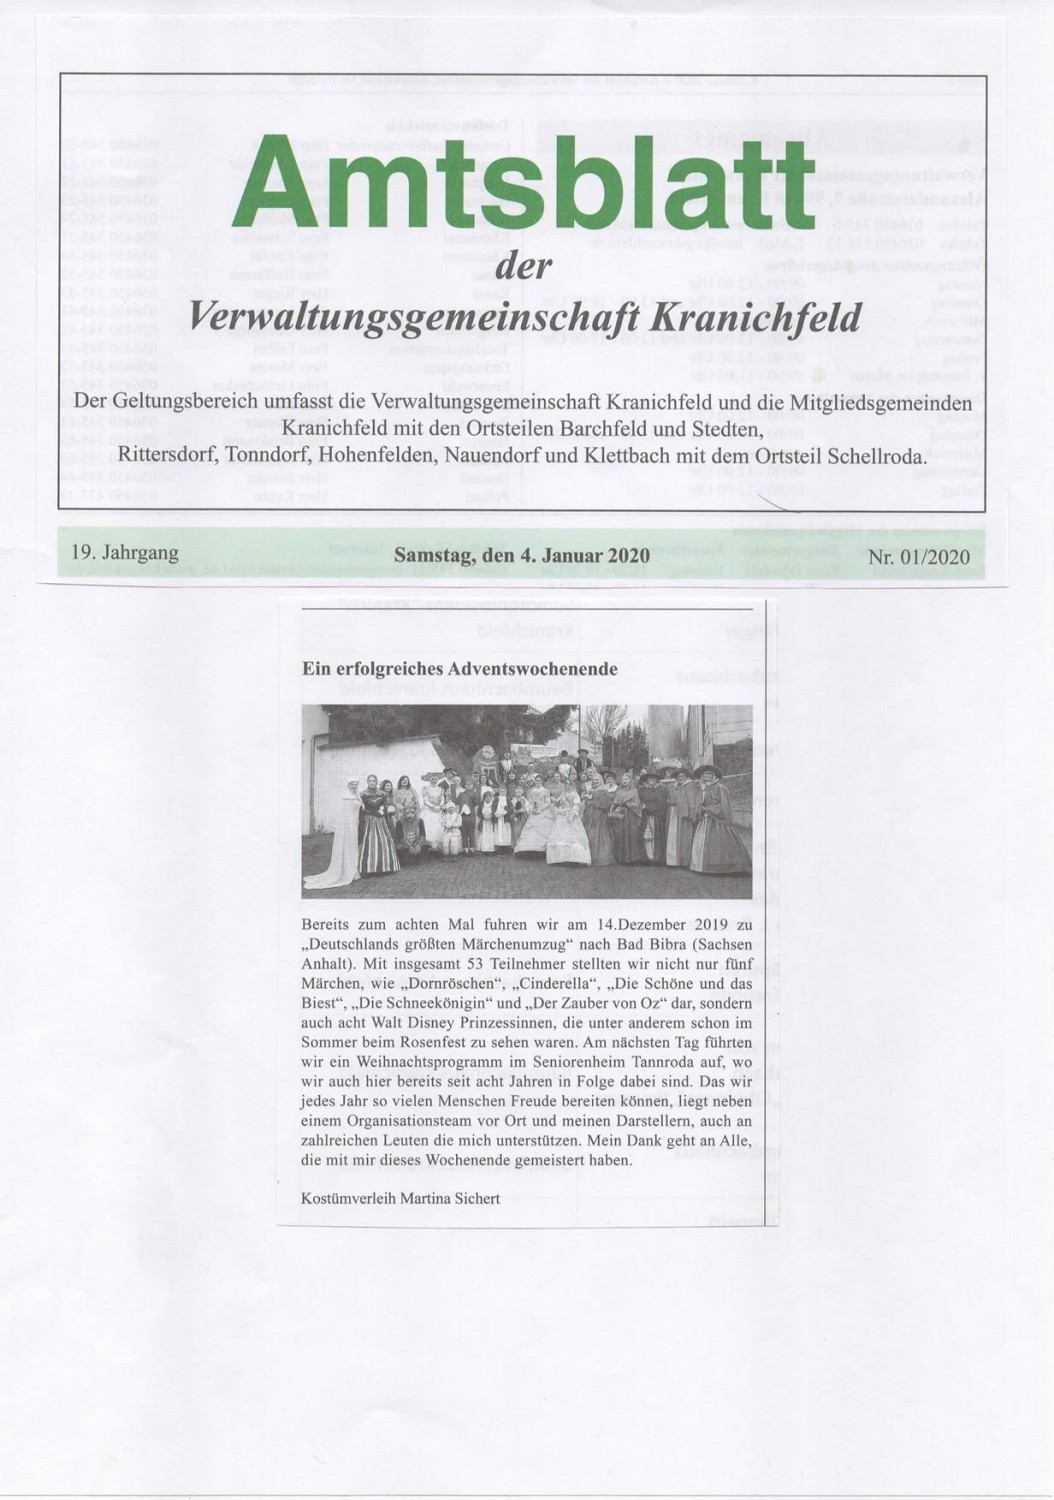 2020-01-04_Amtsblatt.jpg